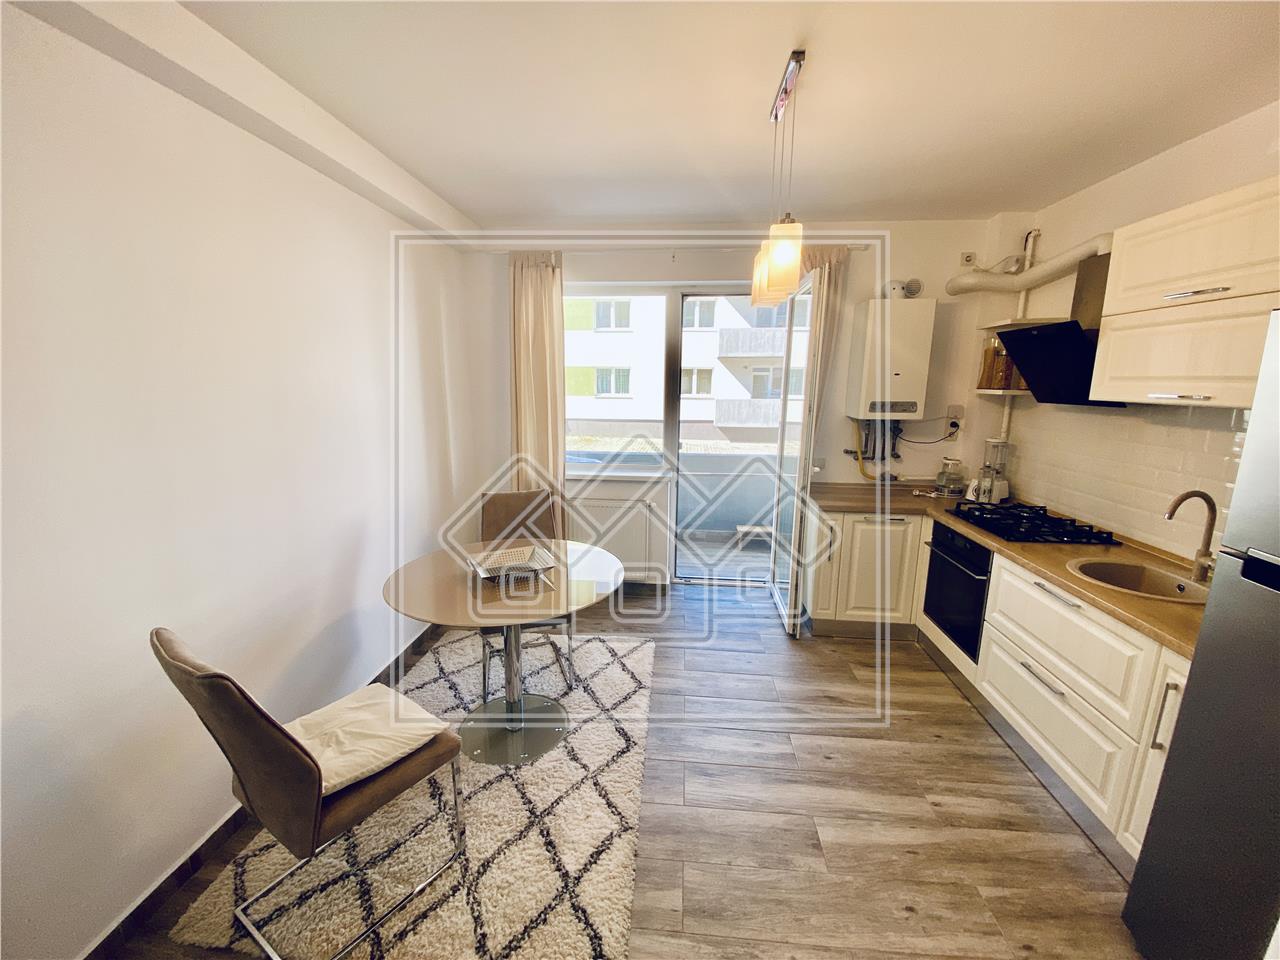 Wohnung zu verkaufen in Sibiu - 2 Zimmer und Balkon - Calea Cisnadiei